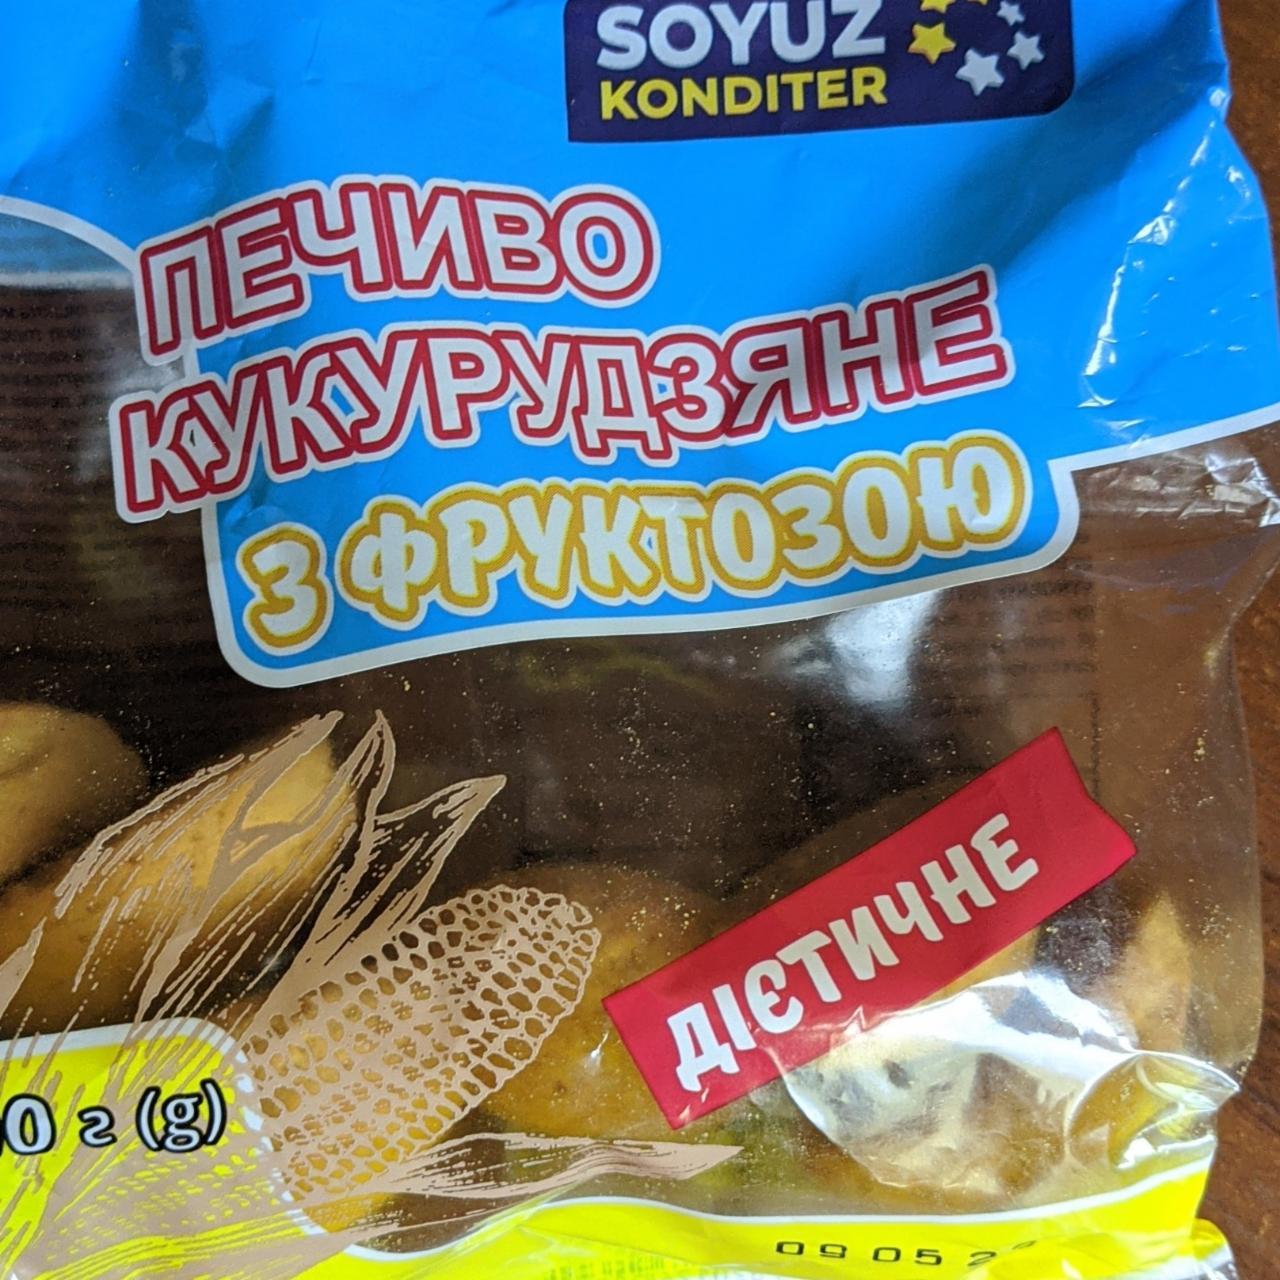 Фото - Печиво кукурудзяне з фруктозою дієтичне Soyuz Konditer